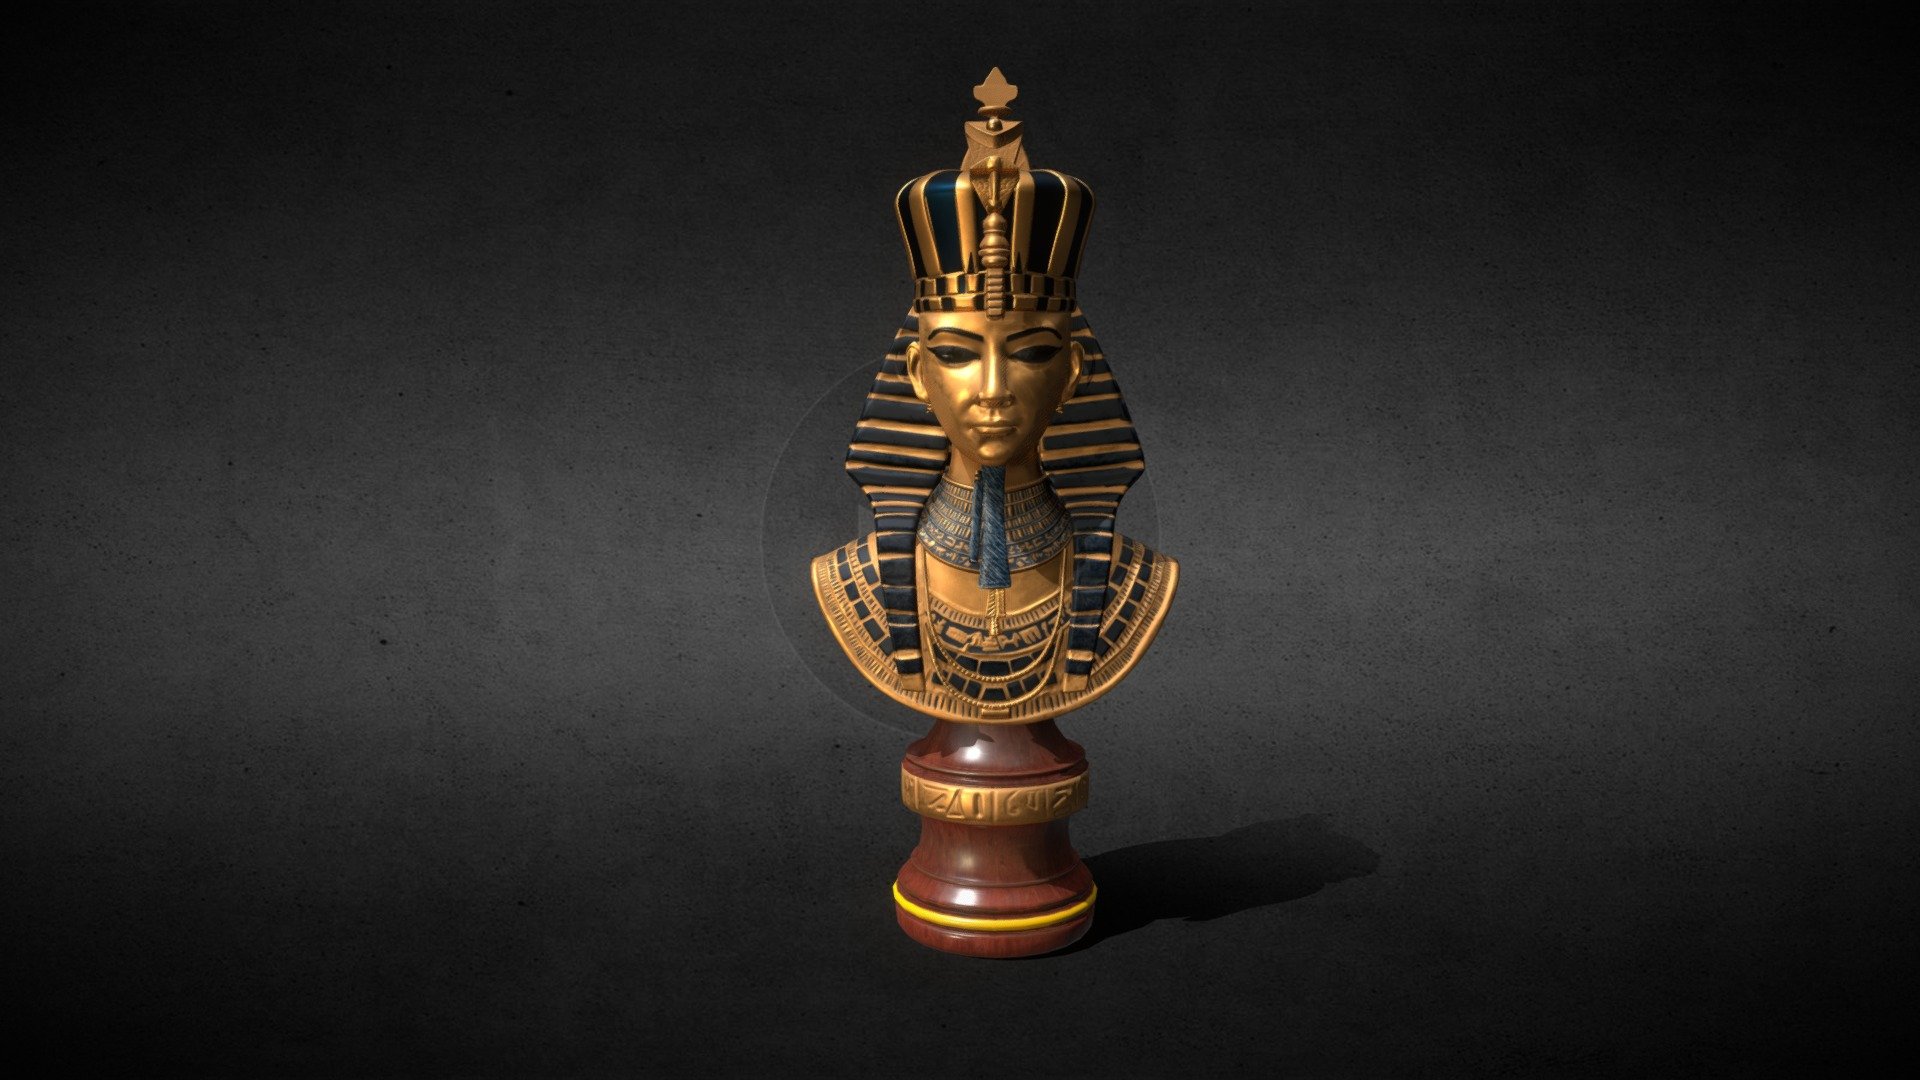 Egyptian Pharaoh 3d Model By Rishav Saha Saharishav258 [1fd1917] Sketchfab